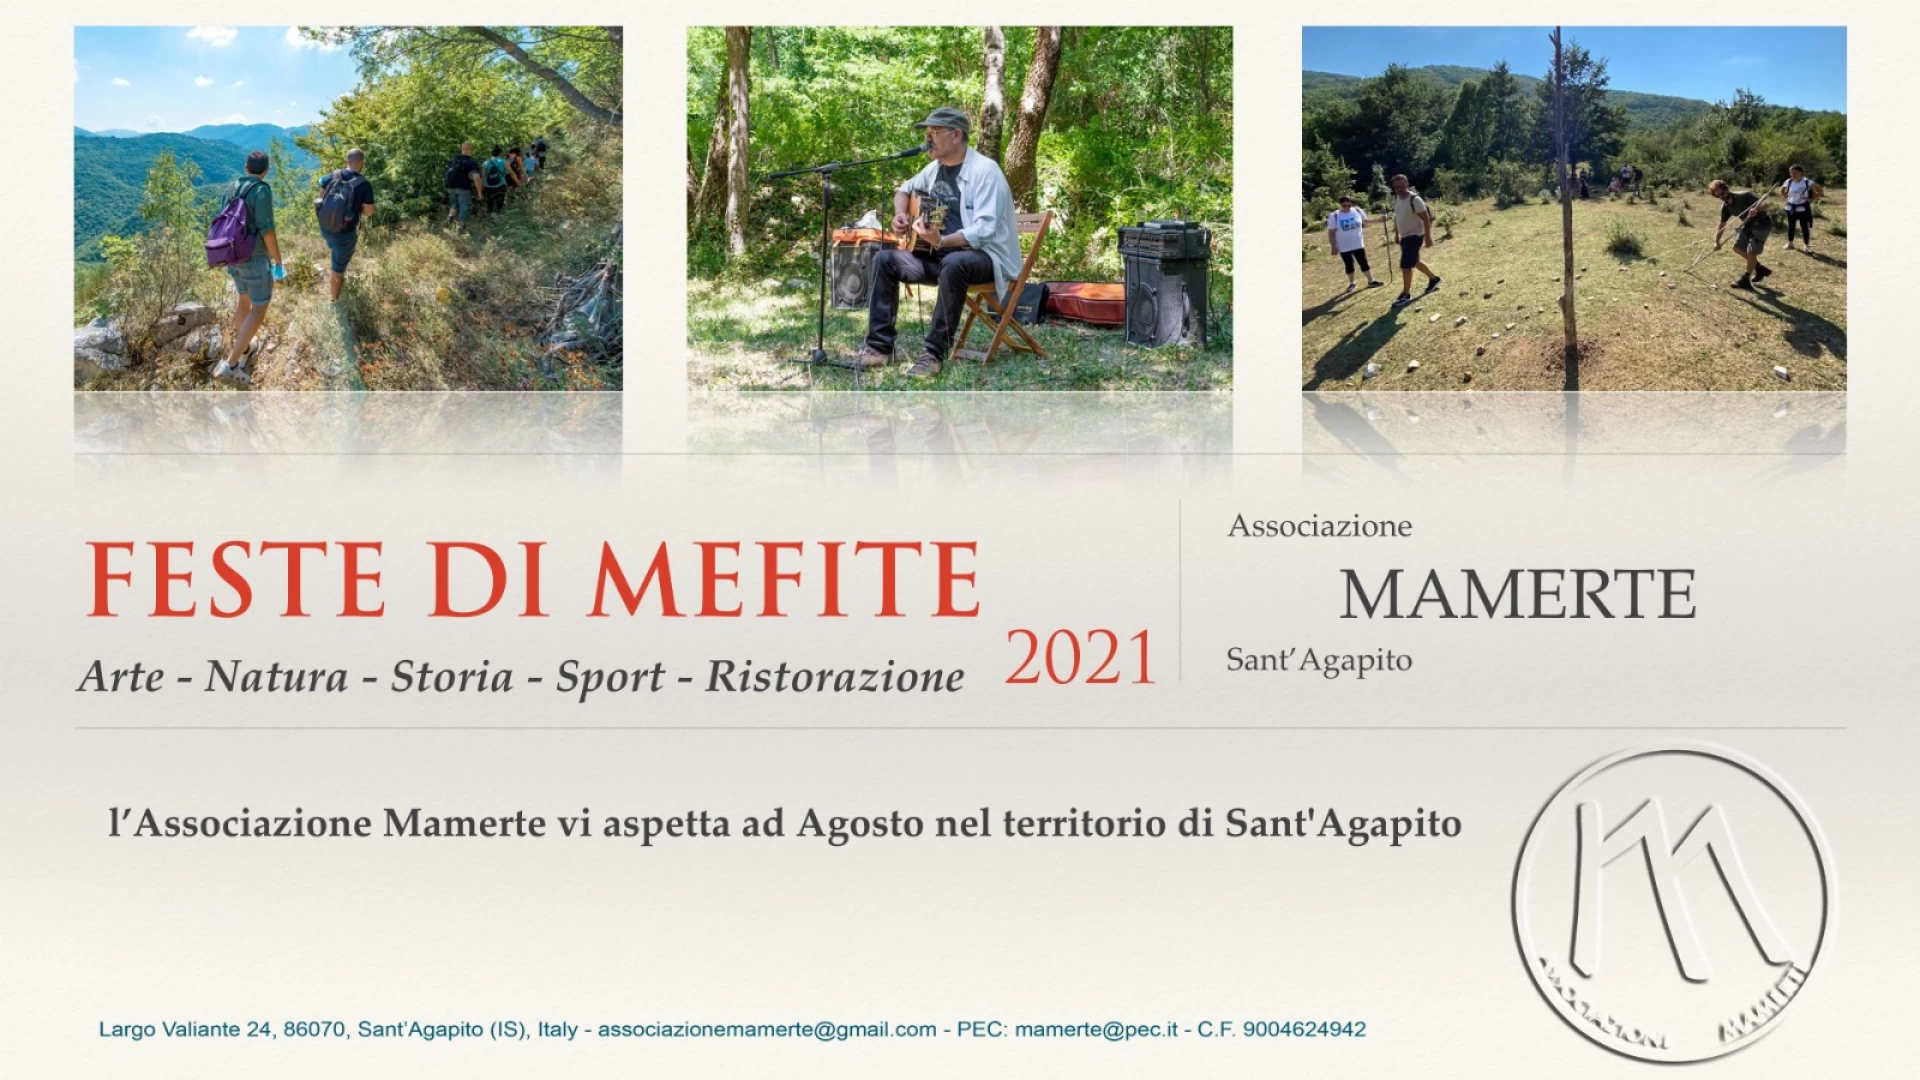 Festa di Mefite a Sant’Agapito, tre giorni in montagna tra natura, arte e musica. La nota dell’Associazione Mamerte.